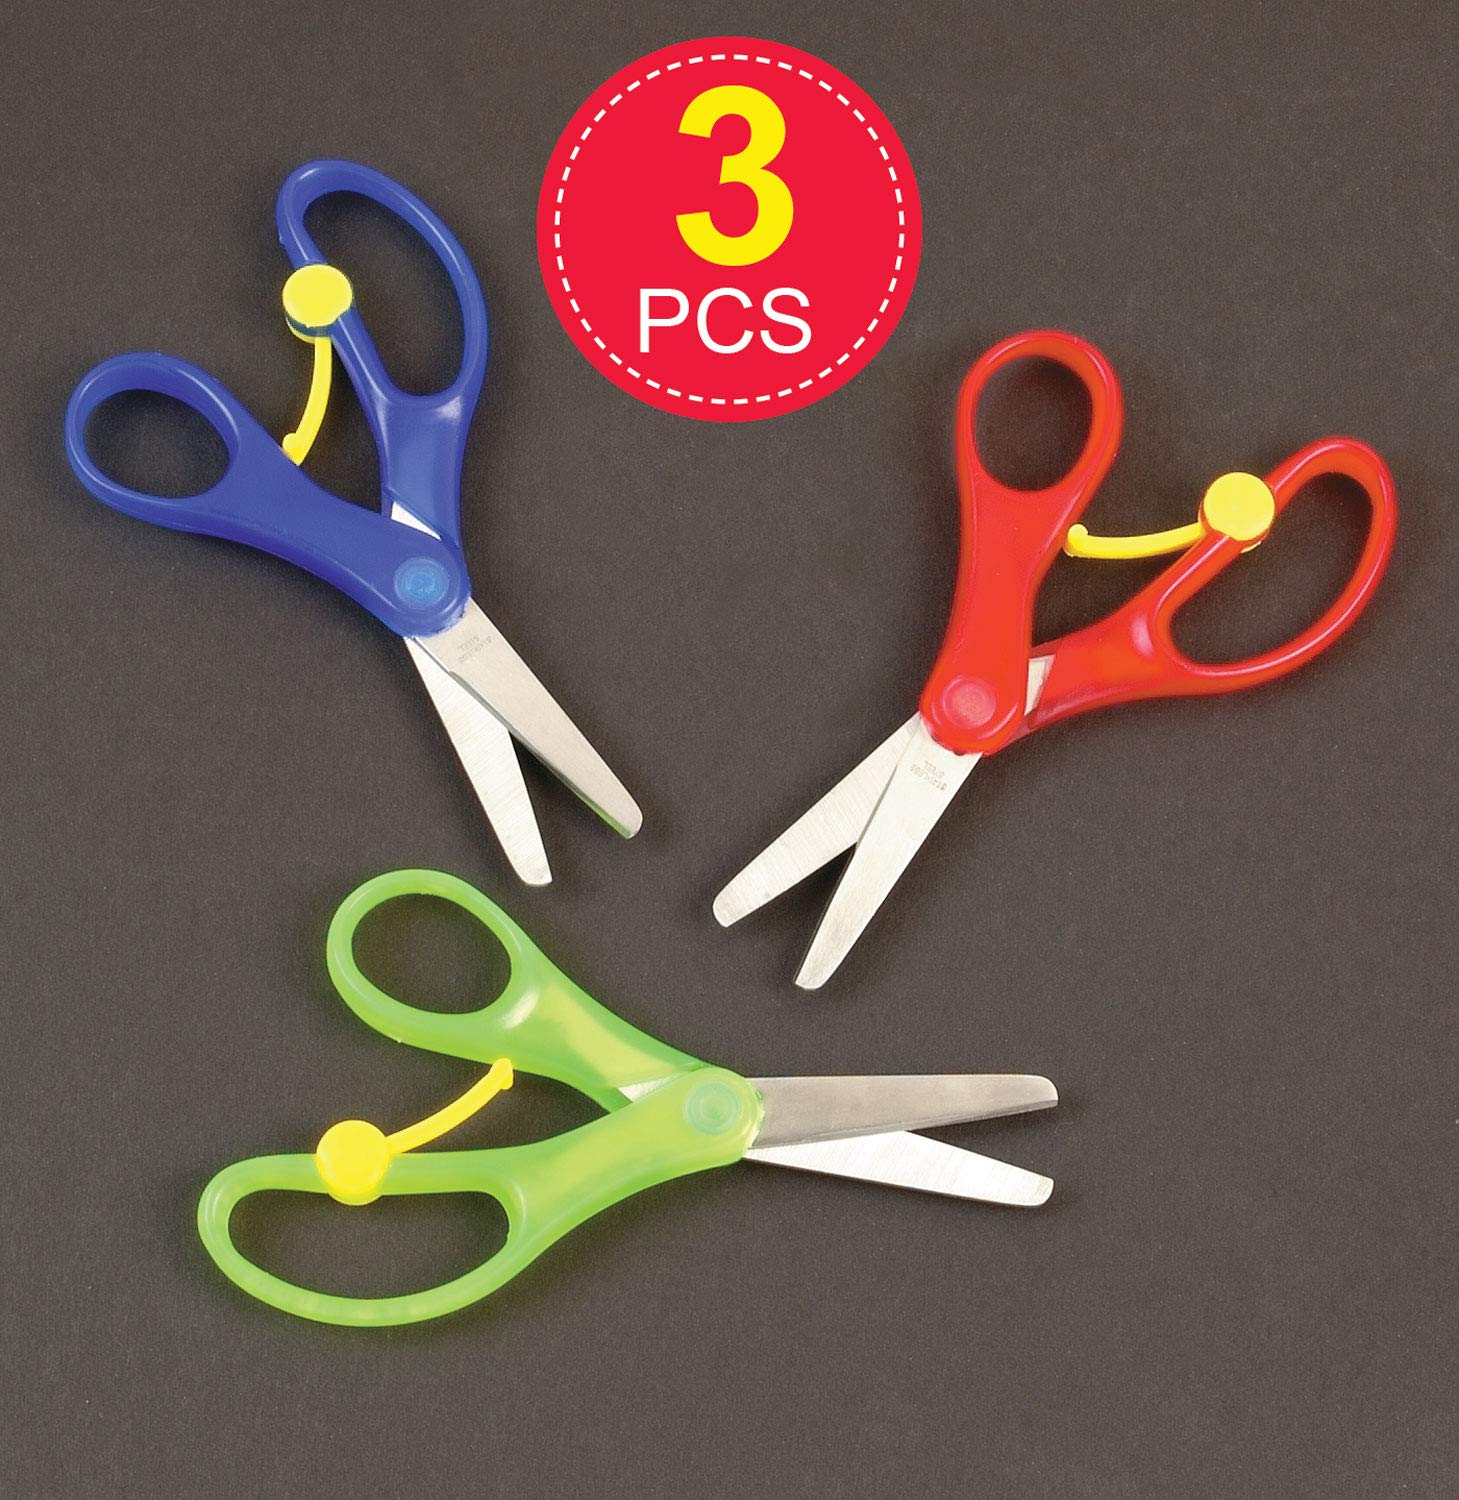 Baker Ross E7376 Spring-Loaded' Kids Scissors (Pack of 3) for Kids